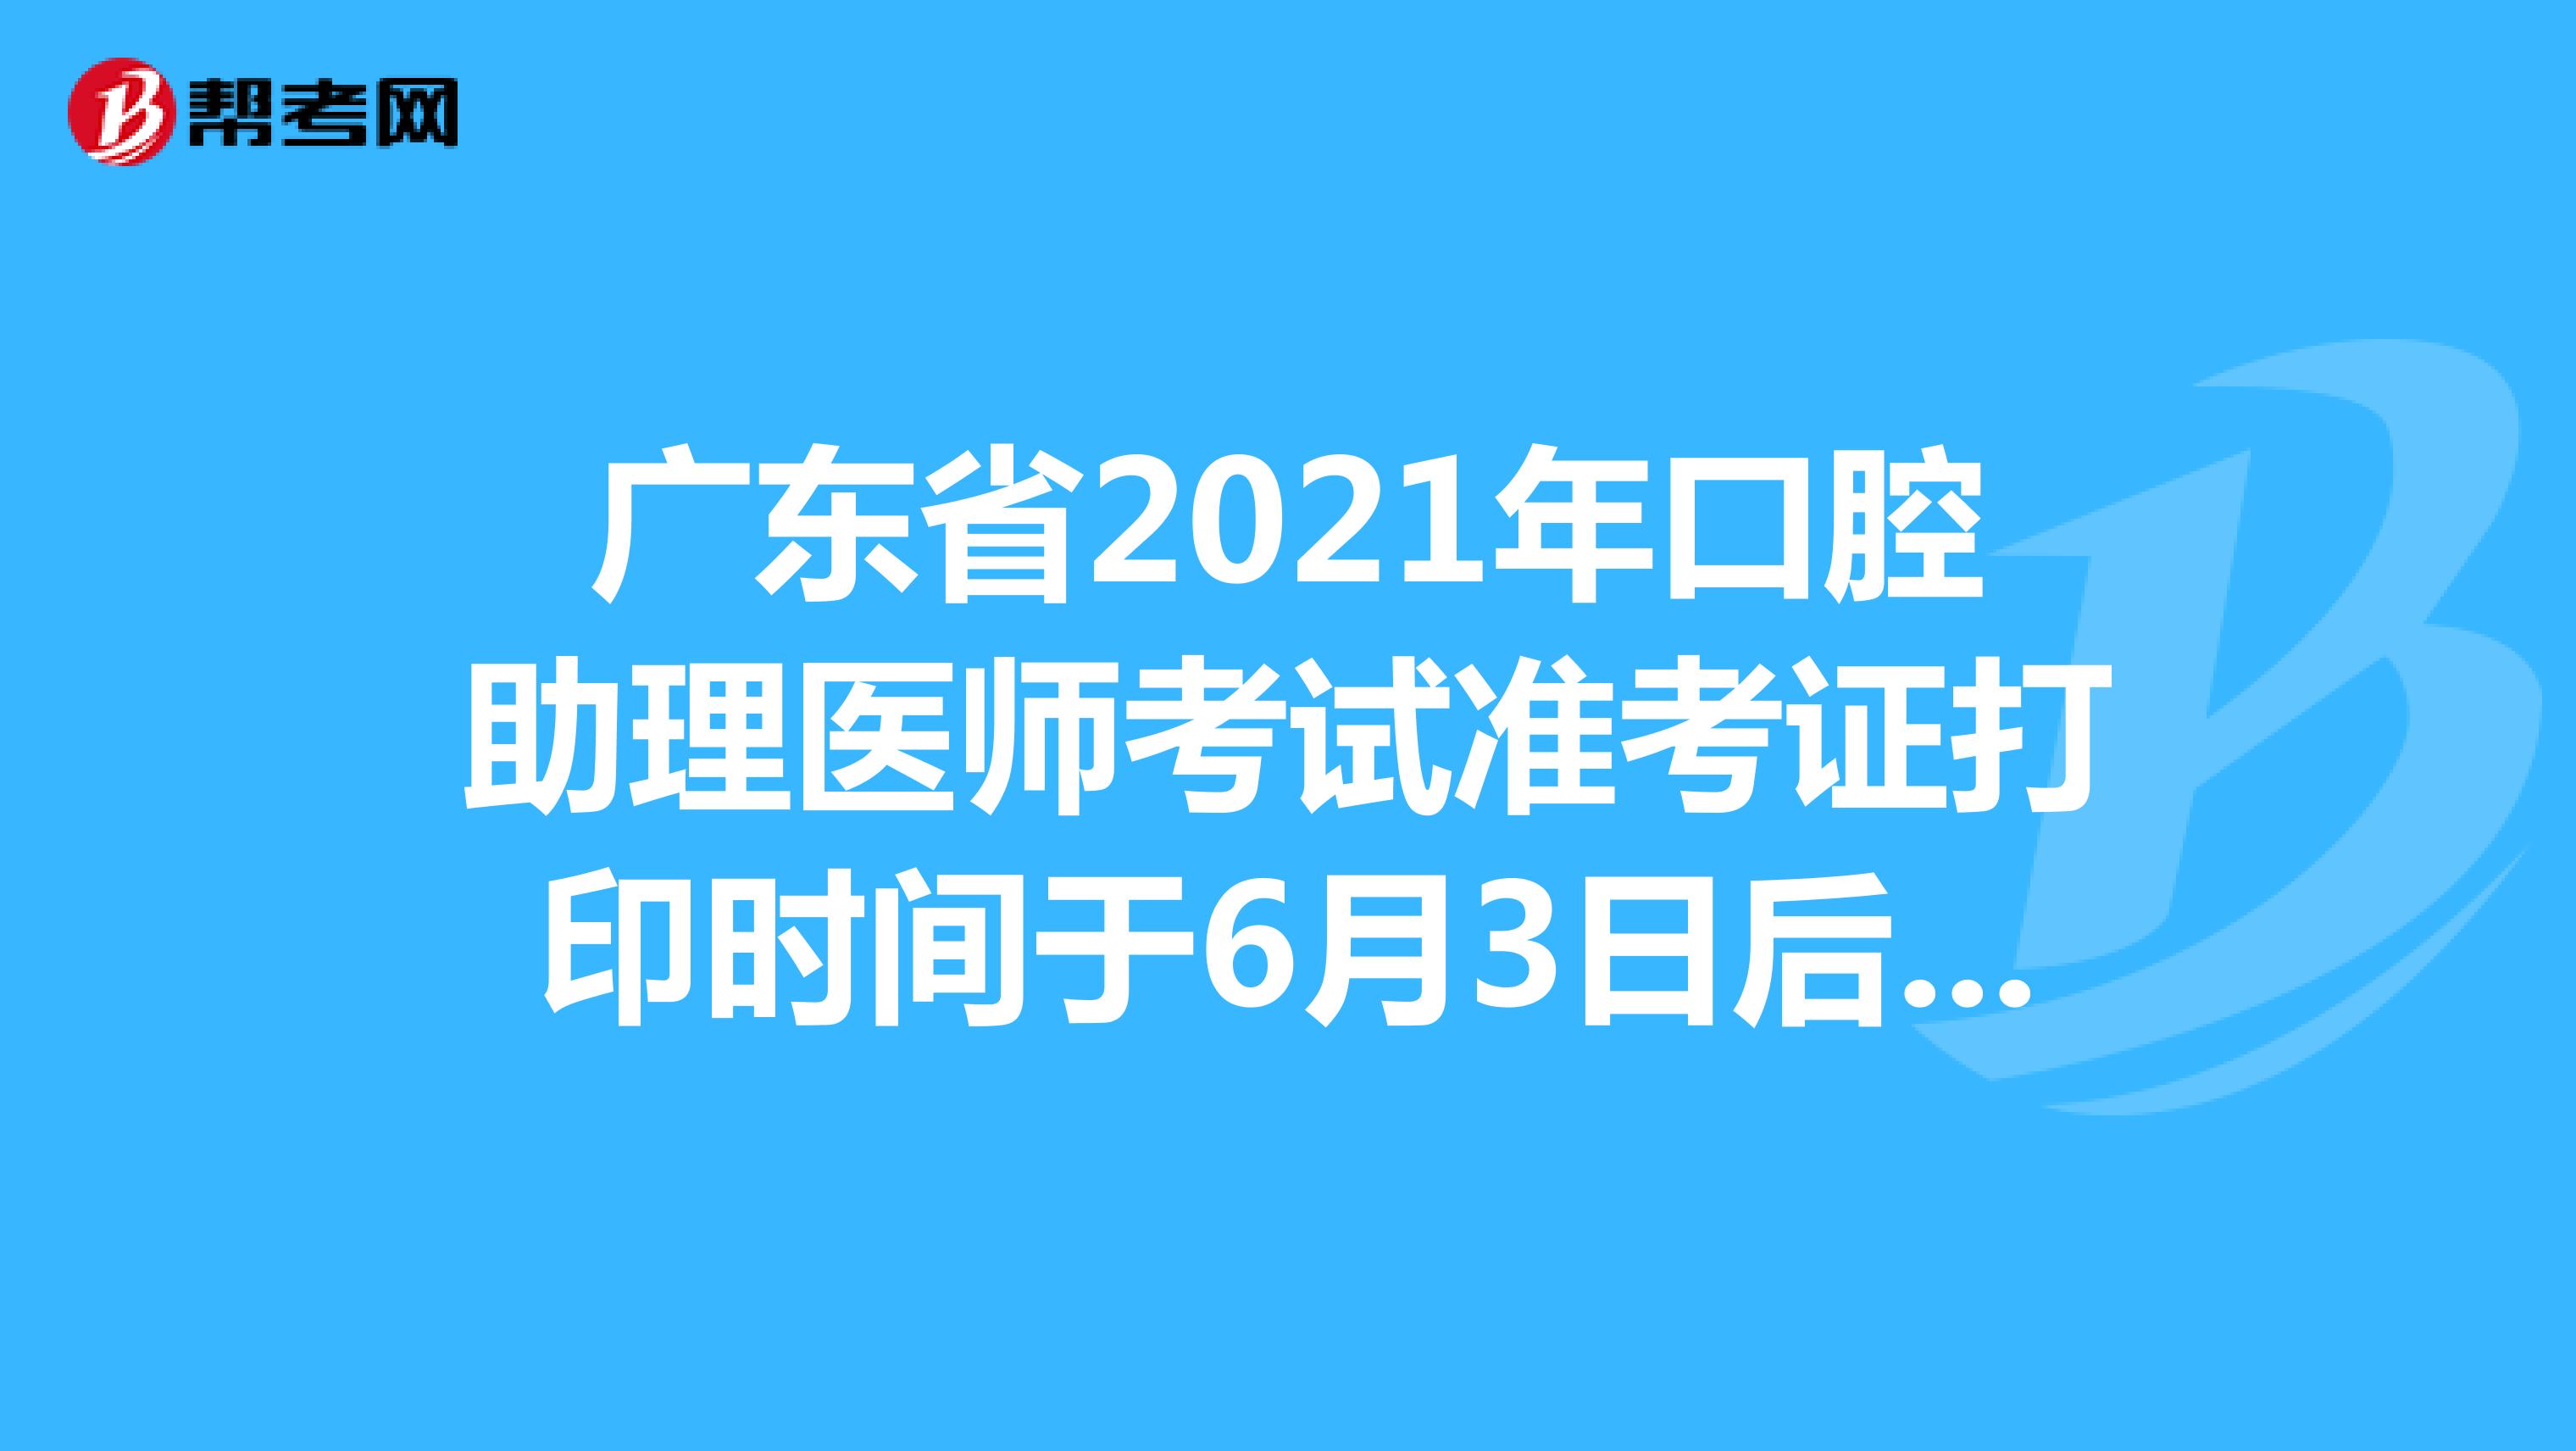 广东省2021年口腔助理医师考试准考证打印时间于6月3日后开始